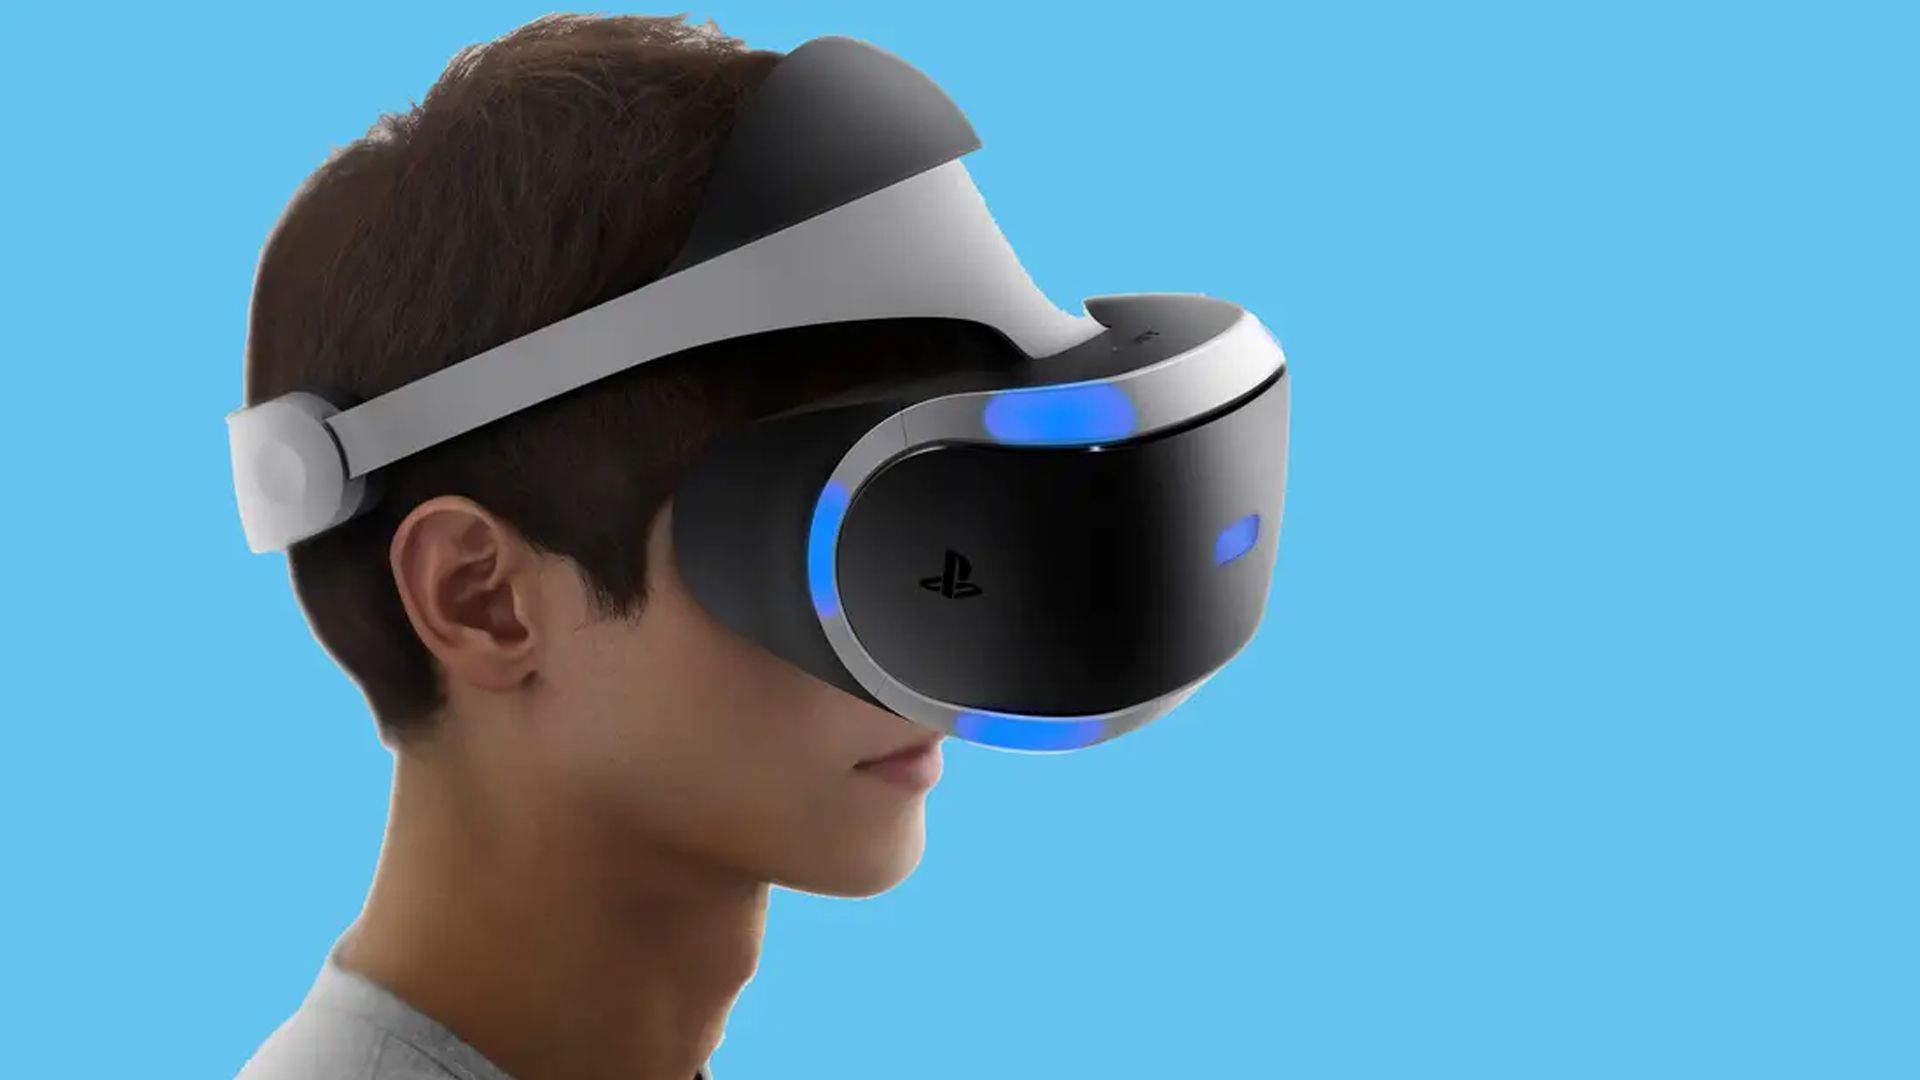 Sony veut faire bouger la réalité virtuelle avec le Playstation VR 2 selon un nouveau brevet